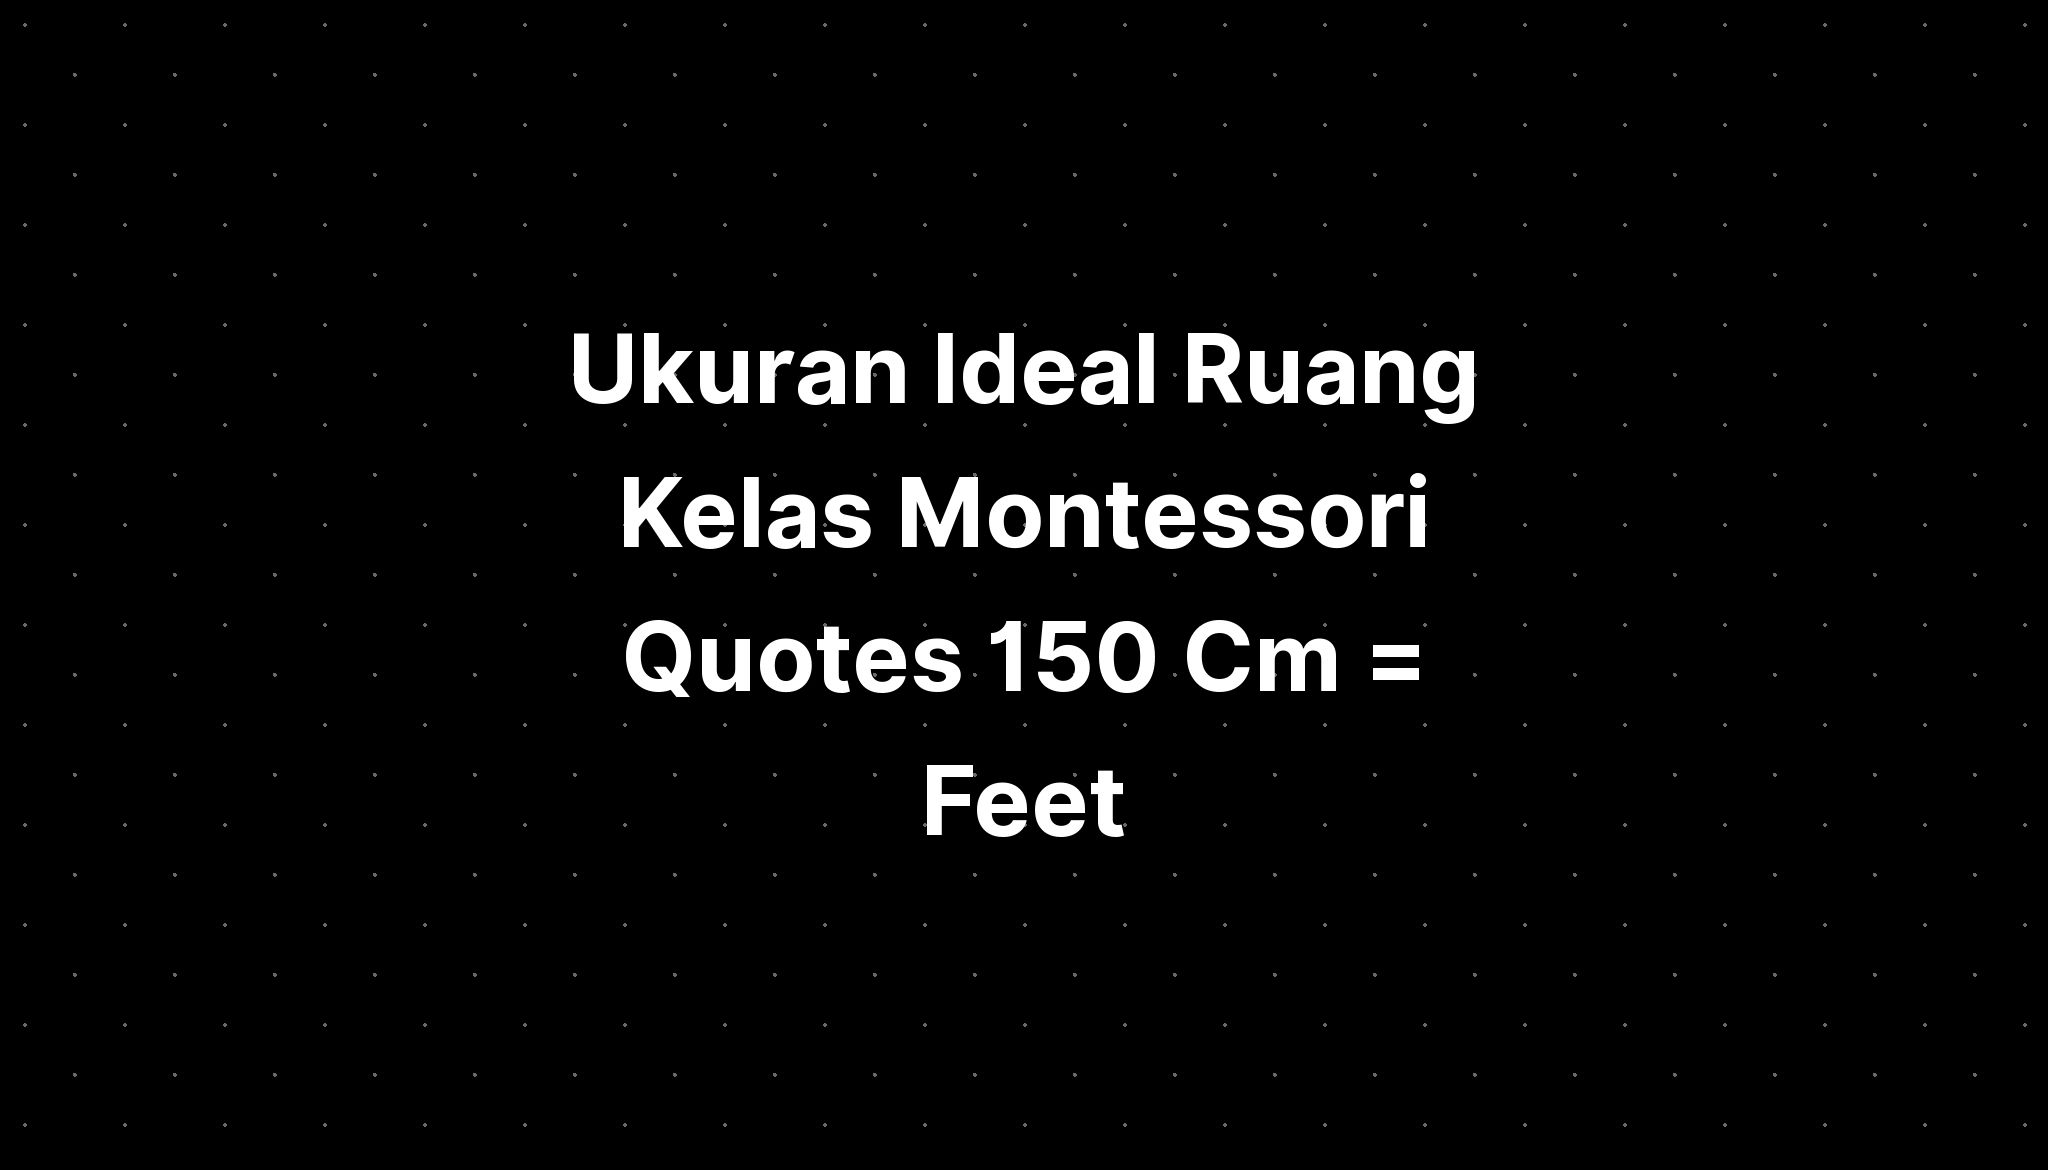 Ukuran Ideal Ruang Kelas Montessori Quotes 150 Cm = Feet - IMAGESEE